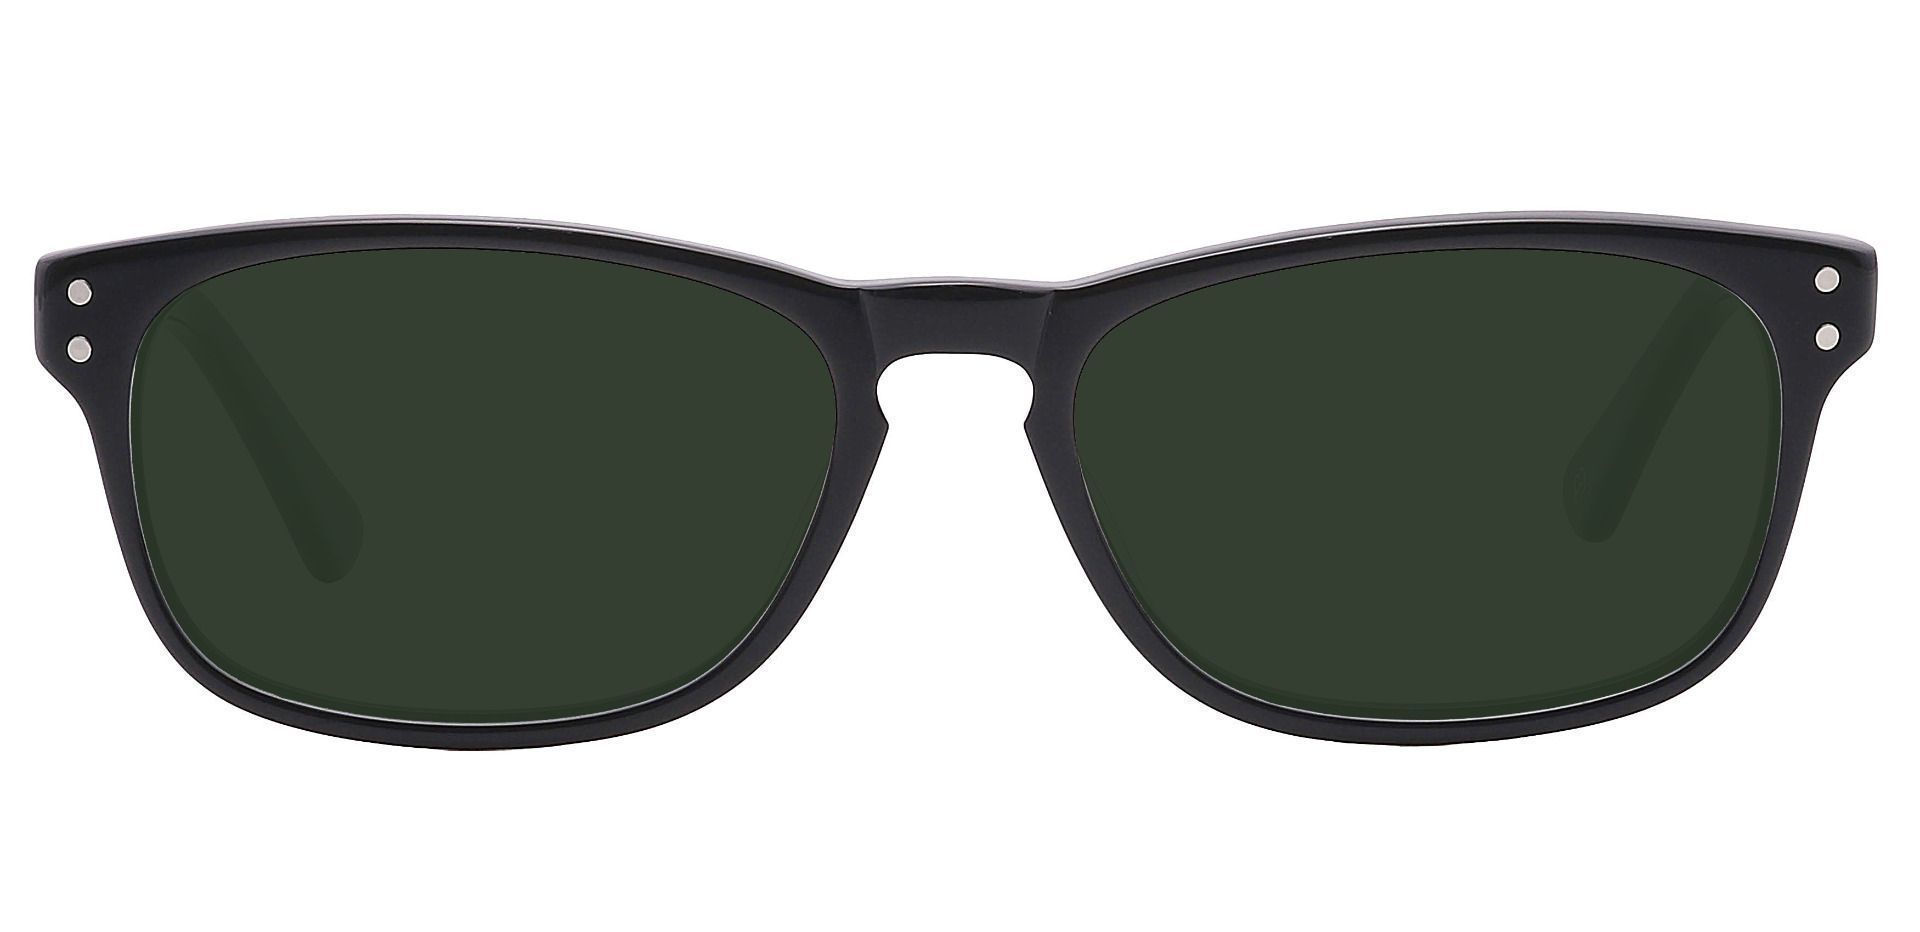 Morris Rectangle Prescription Sunglasses - Black Frame With Green Lenses